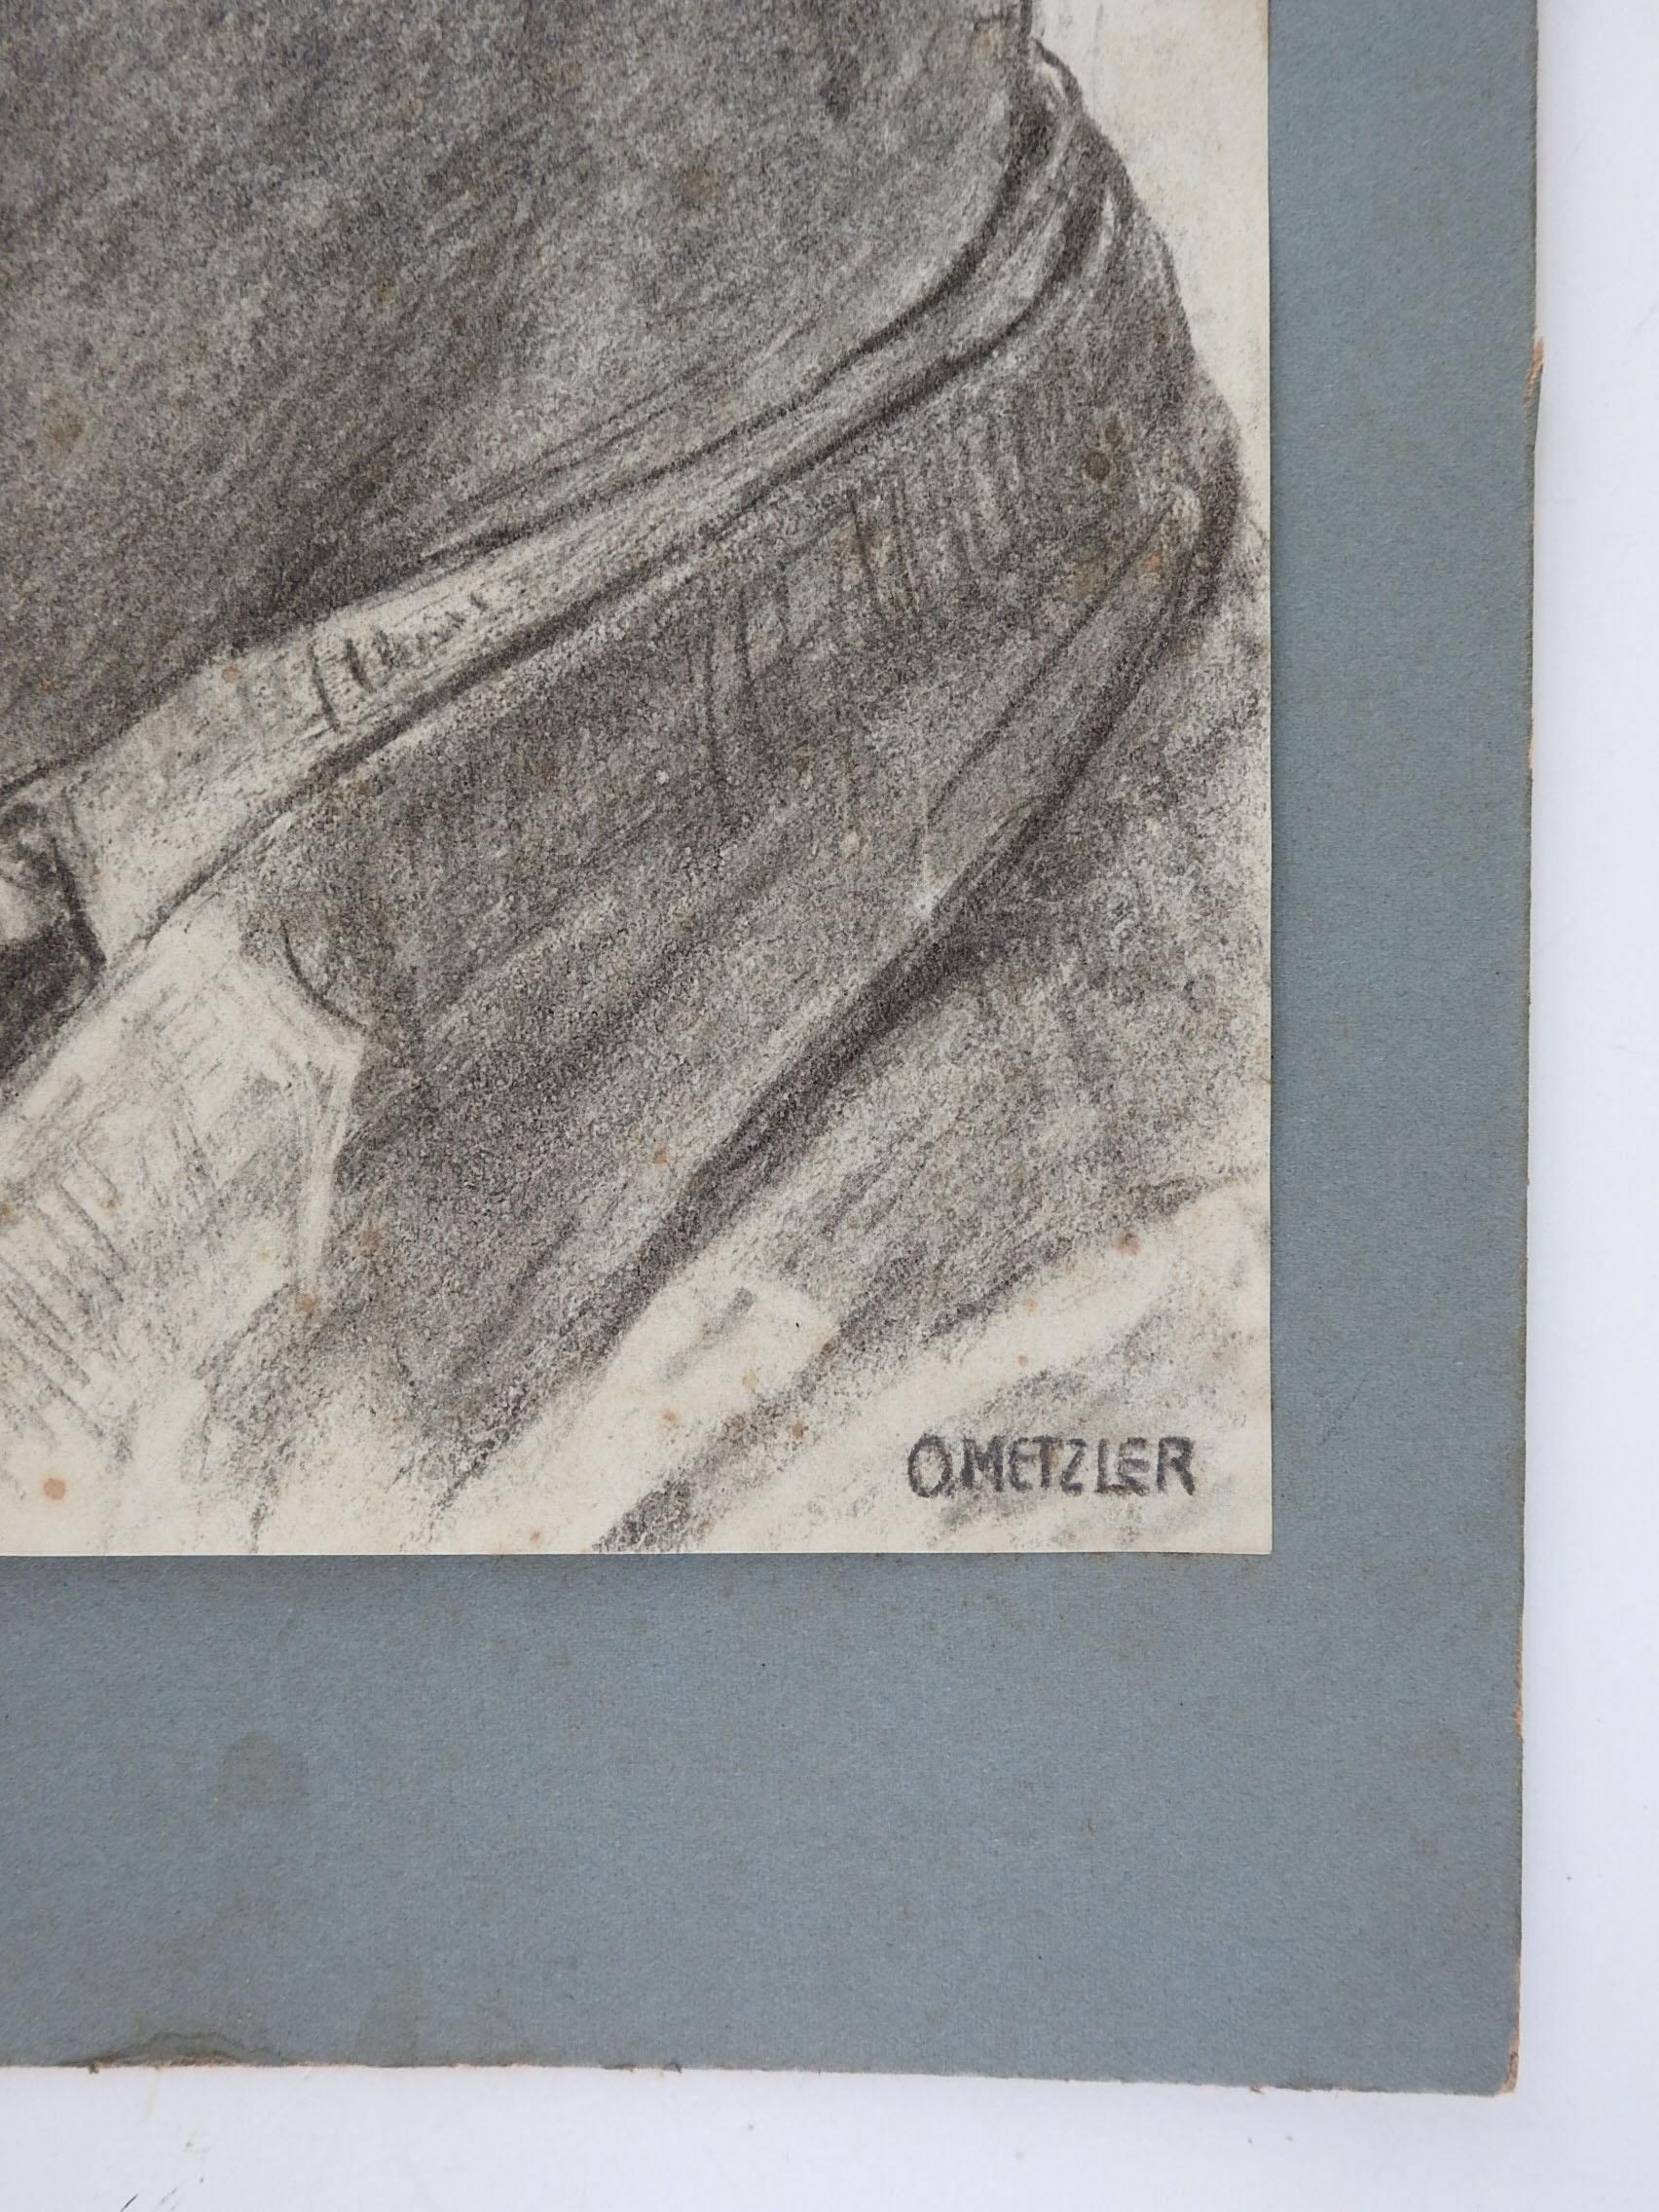 Vintage début 20ème siècle, dessin au crayon sur papier d'un jeune homme.  Signé O. Metzler dans le coin inférieur droit.  Montée sur un support en carton mat gris, taille de l'image 8,5